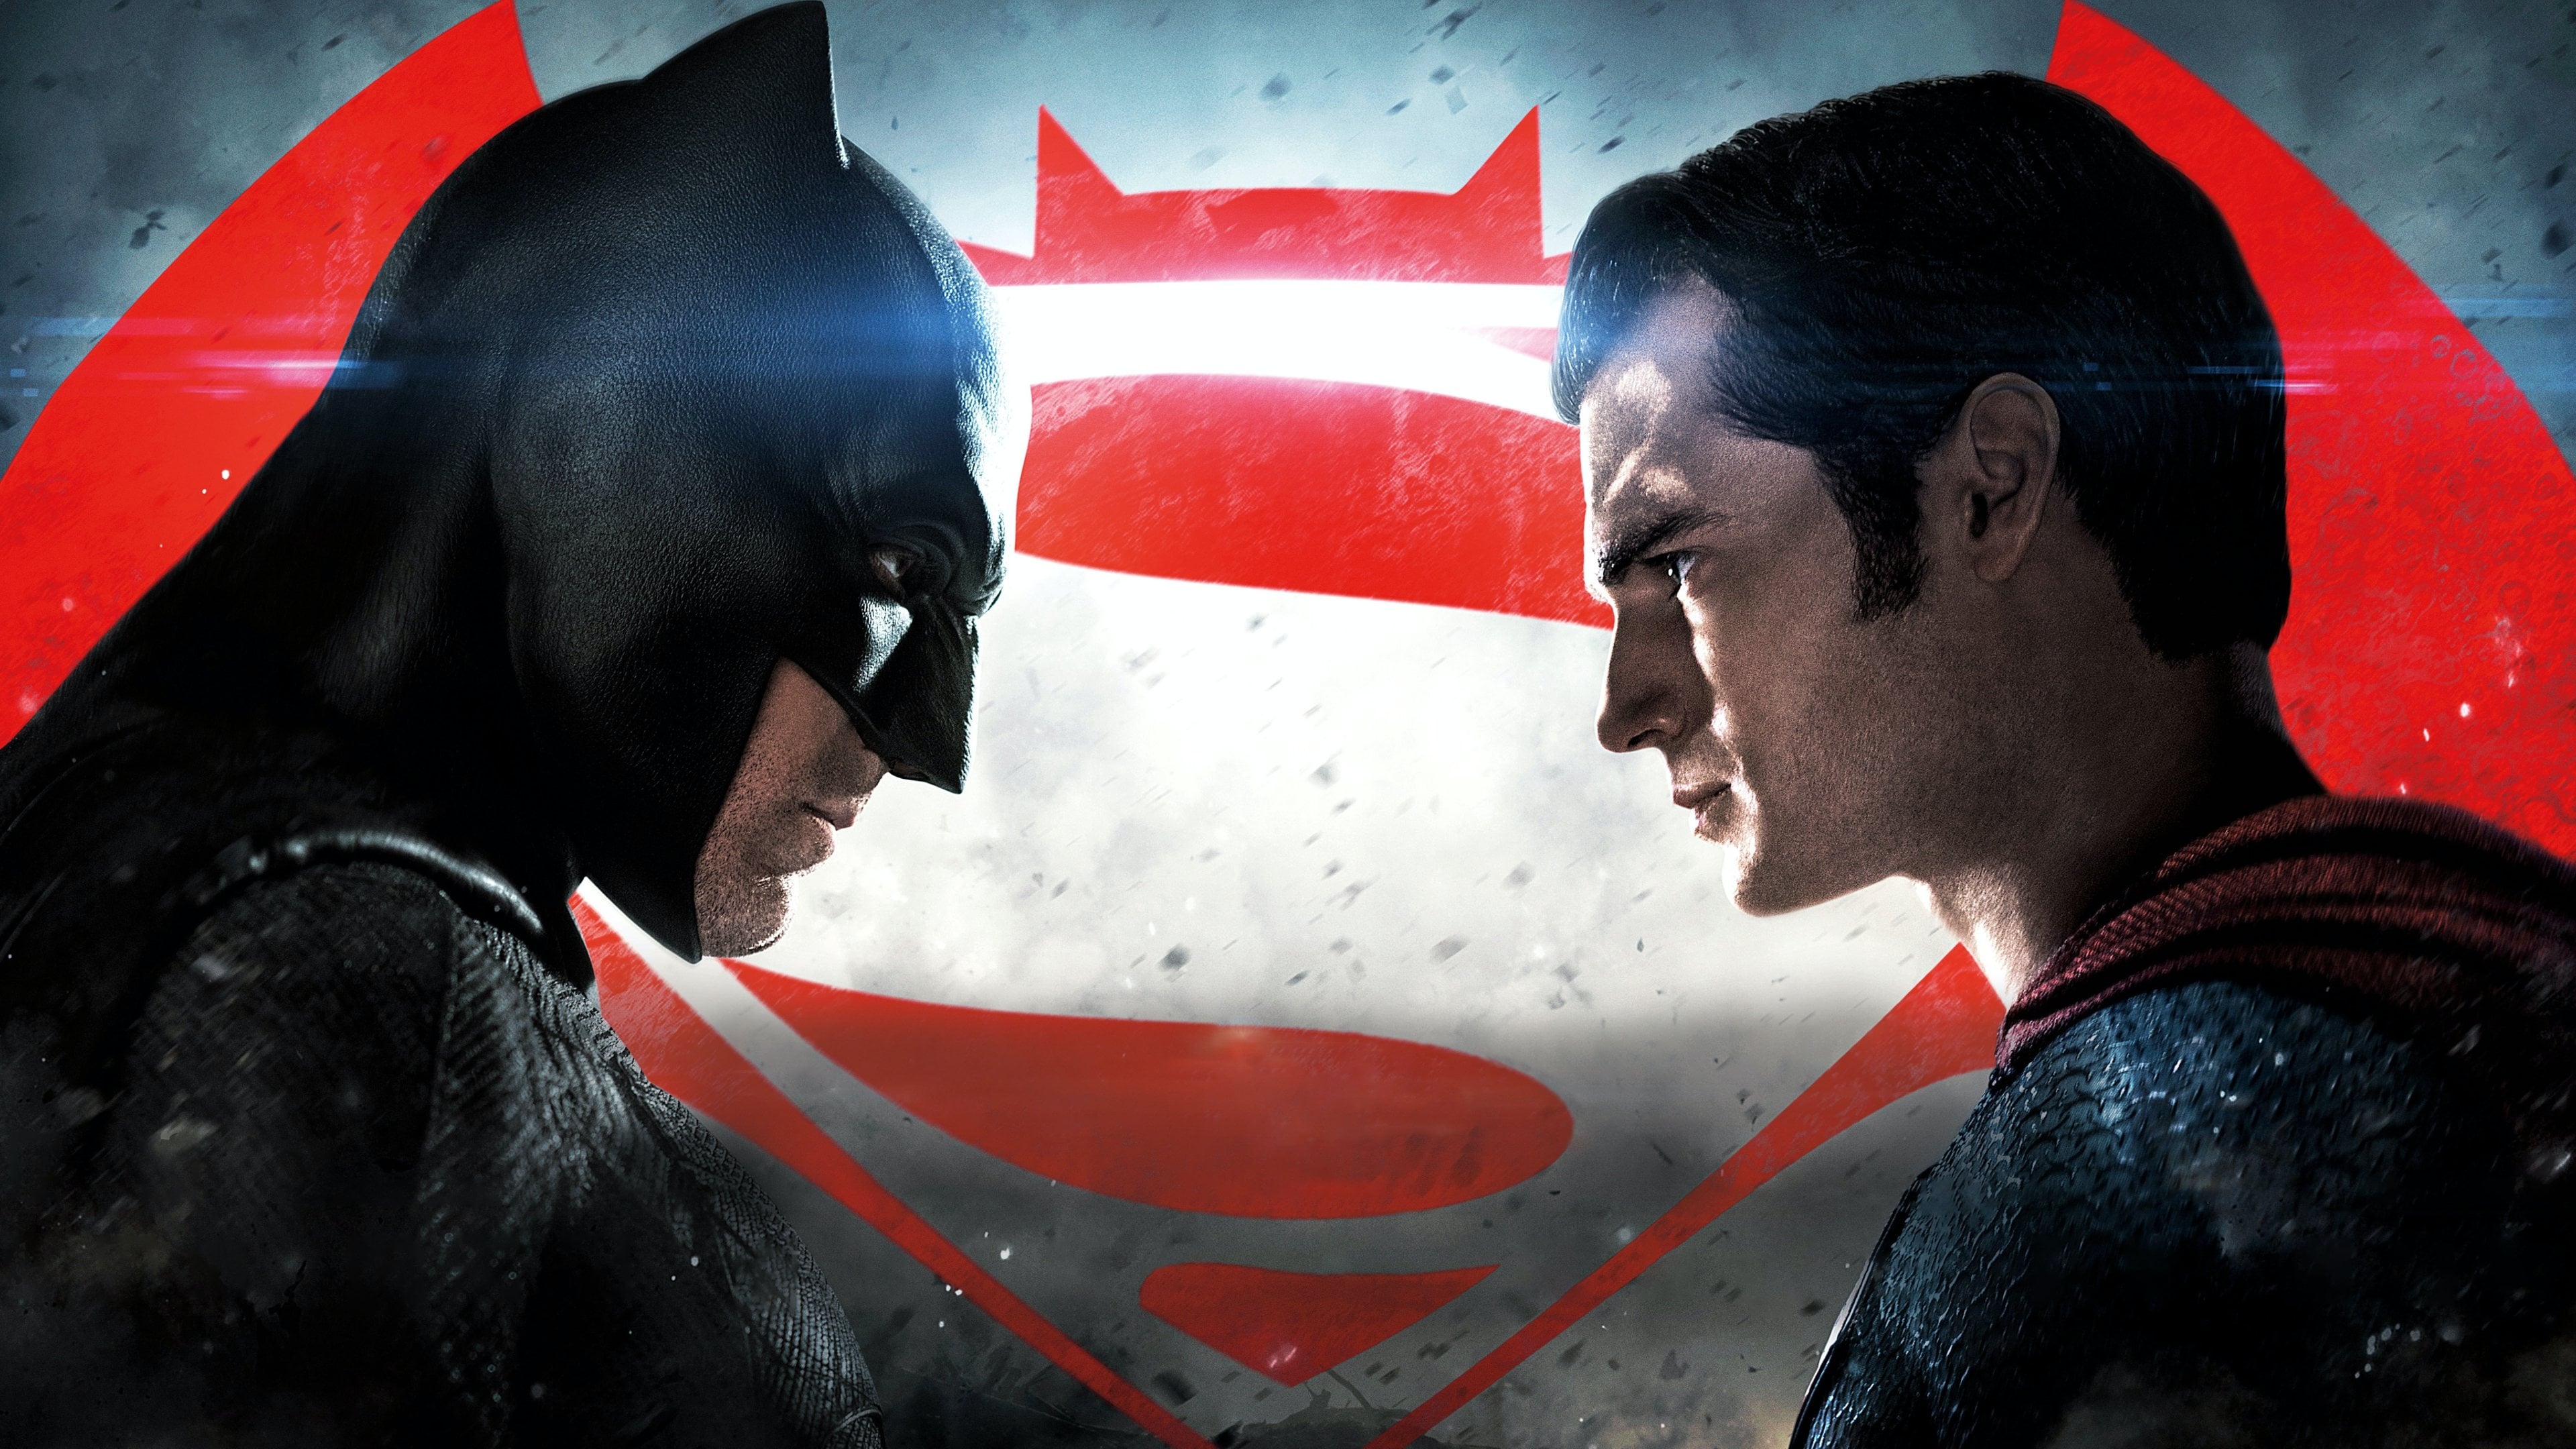 Poster Phim Batman Đại Chiến Superman: Ánh Sáng Công Lý (Batman v Superman: Dawn of Justice)